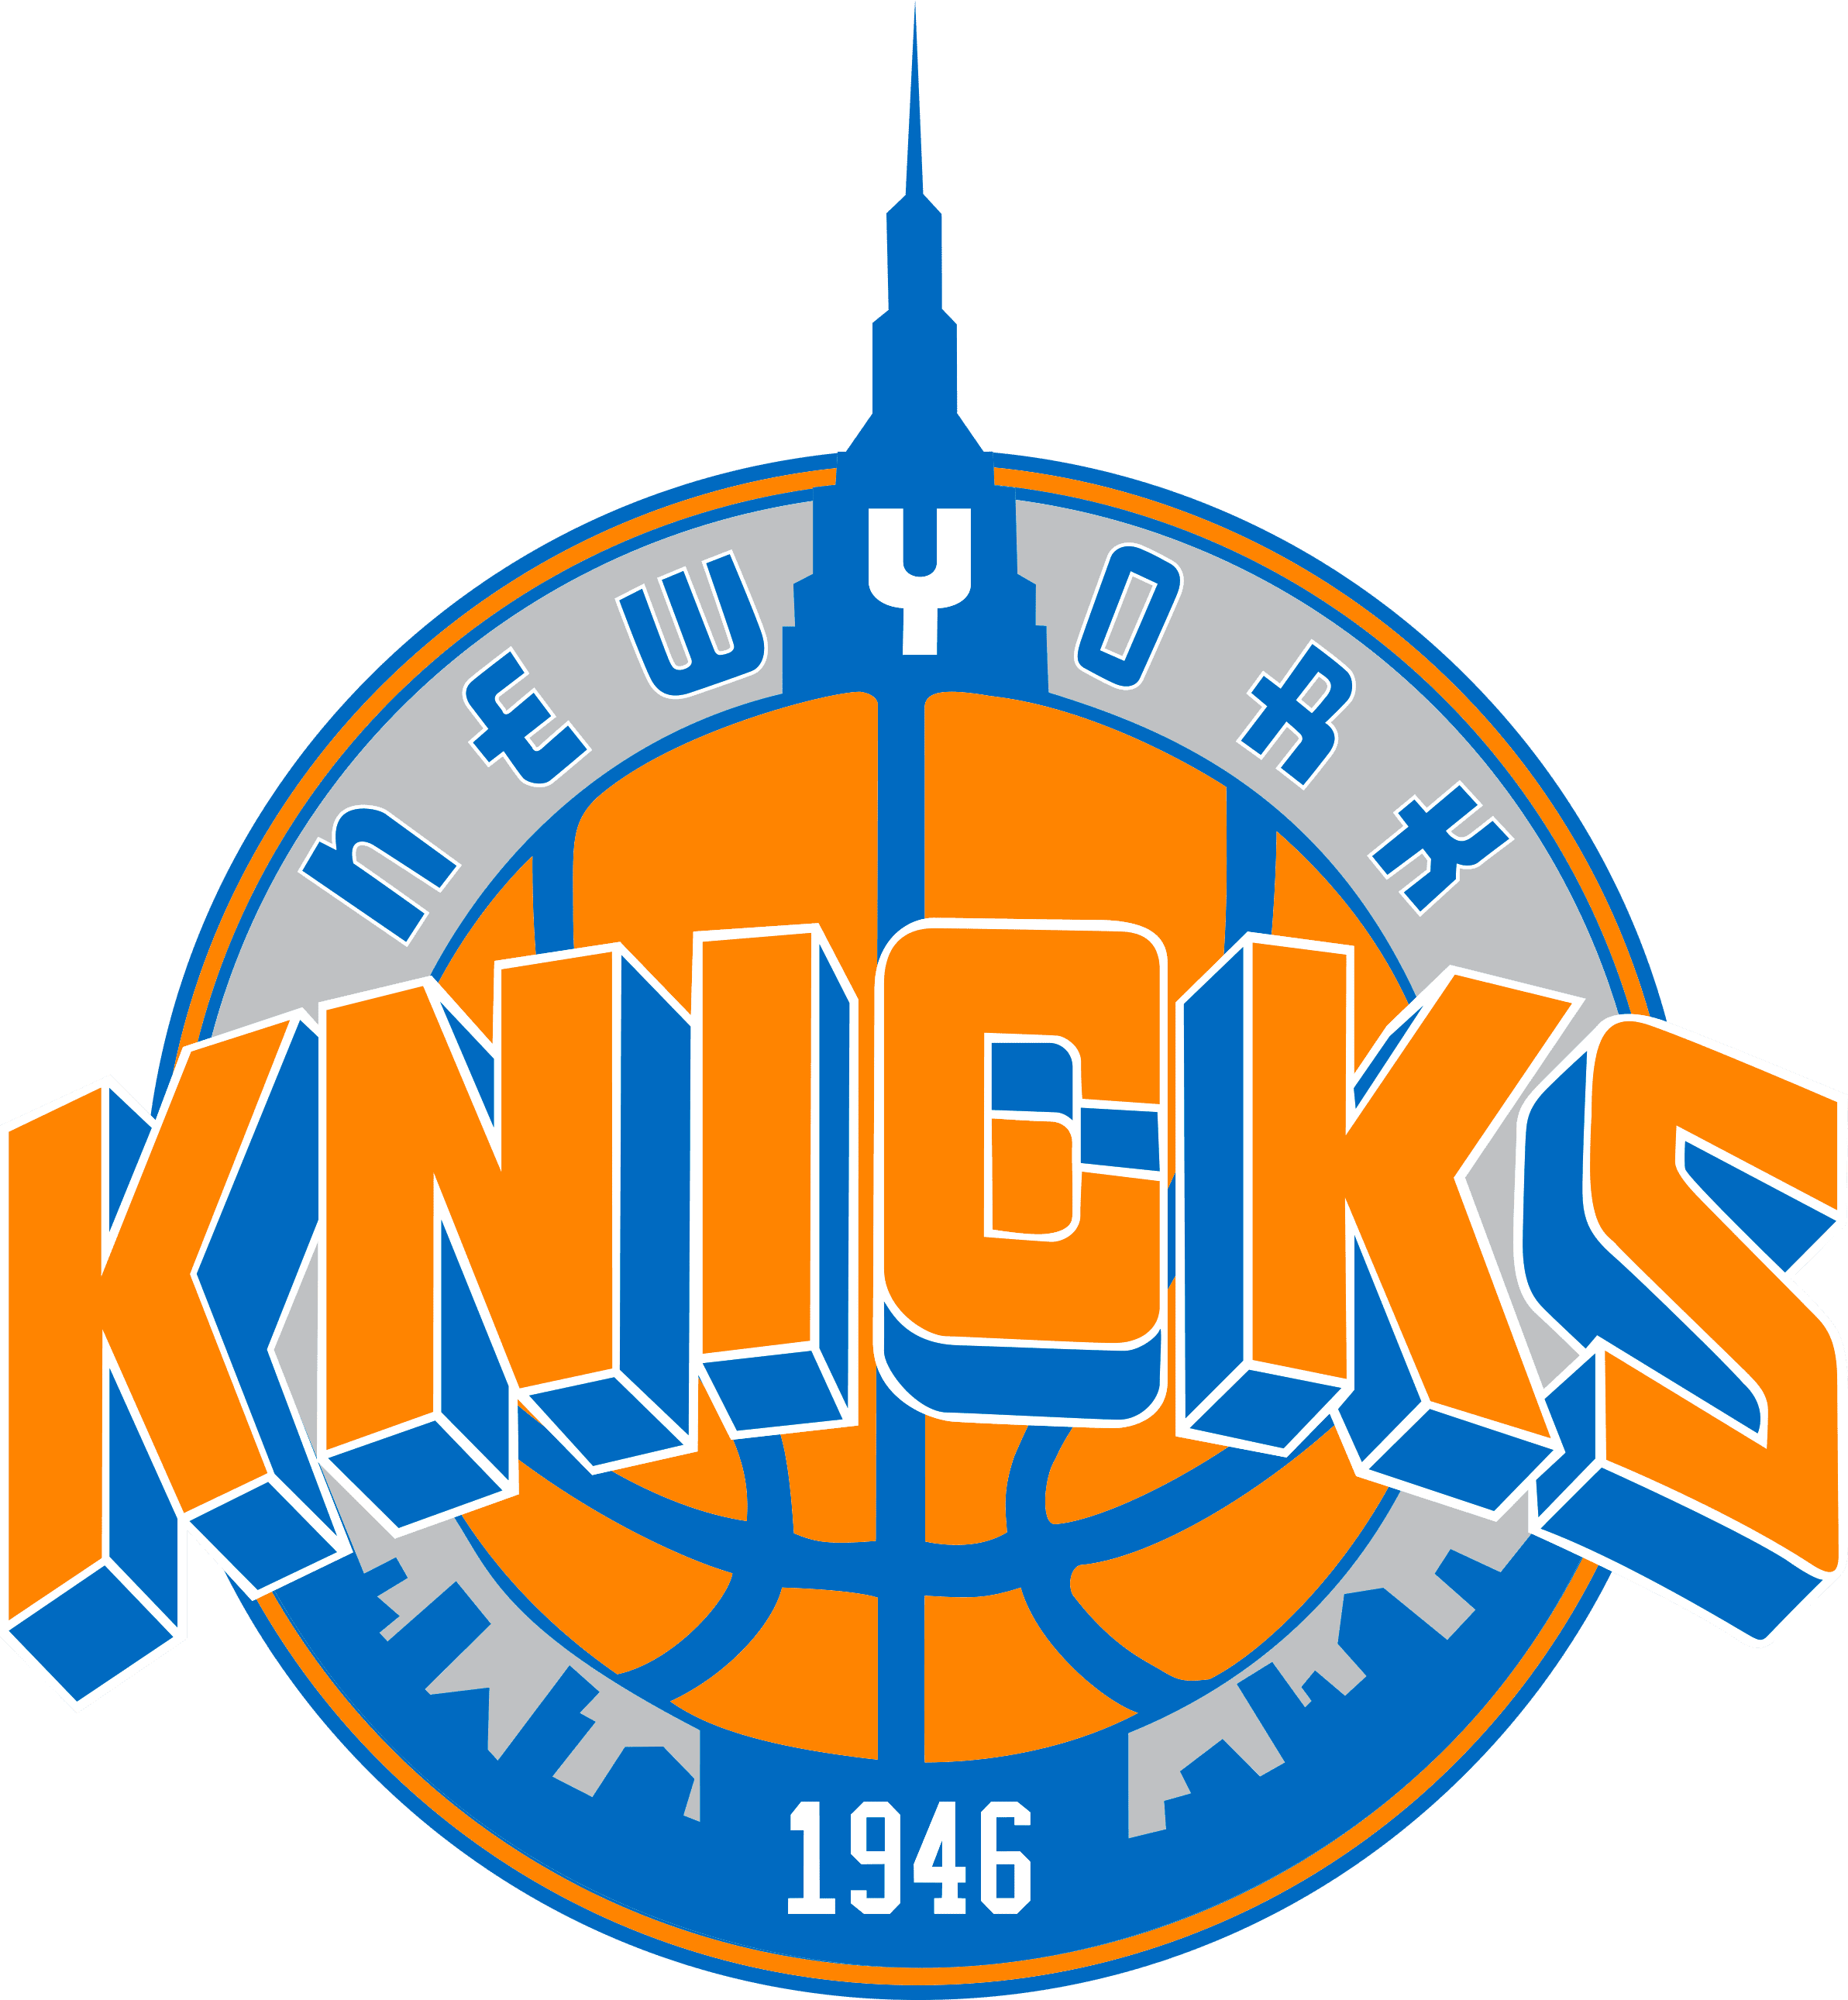 Knicks Logo PNG Image File